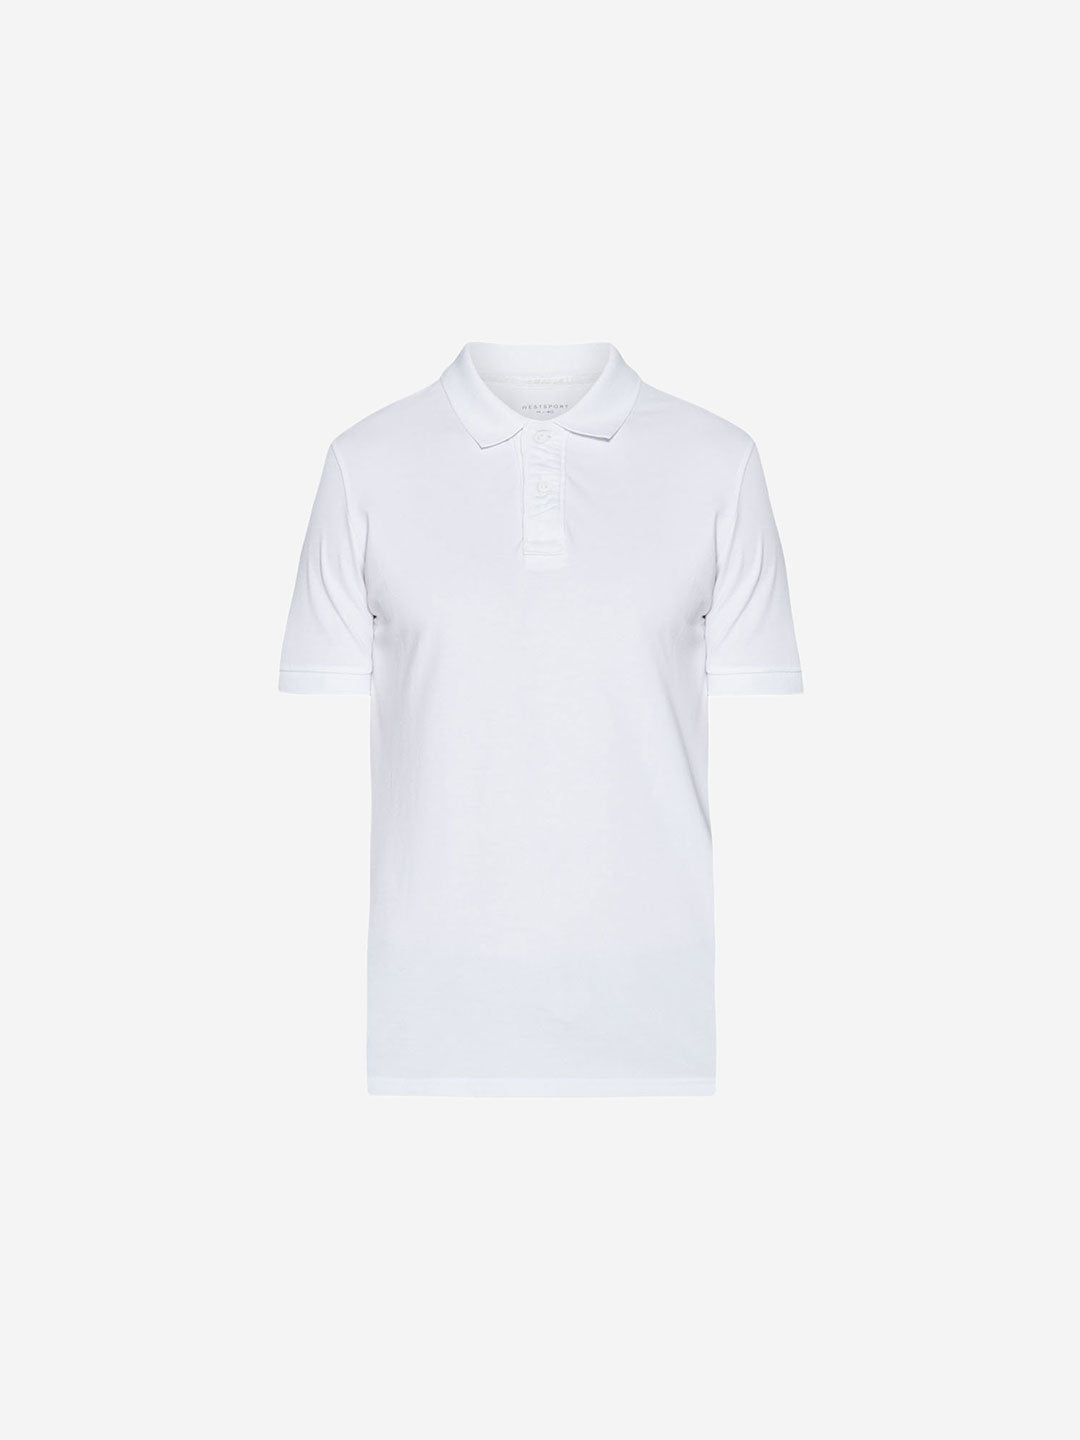 Westsport White Slim Fit Polo T-Shirt | White Slim Fit Polo T-Shirt for Men Close Up View - Westside